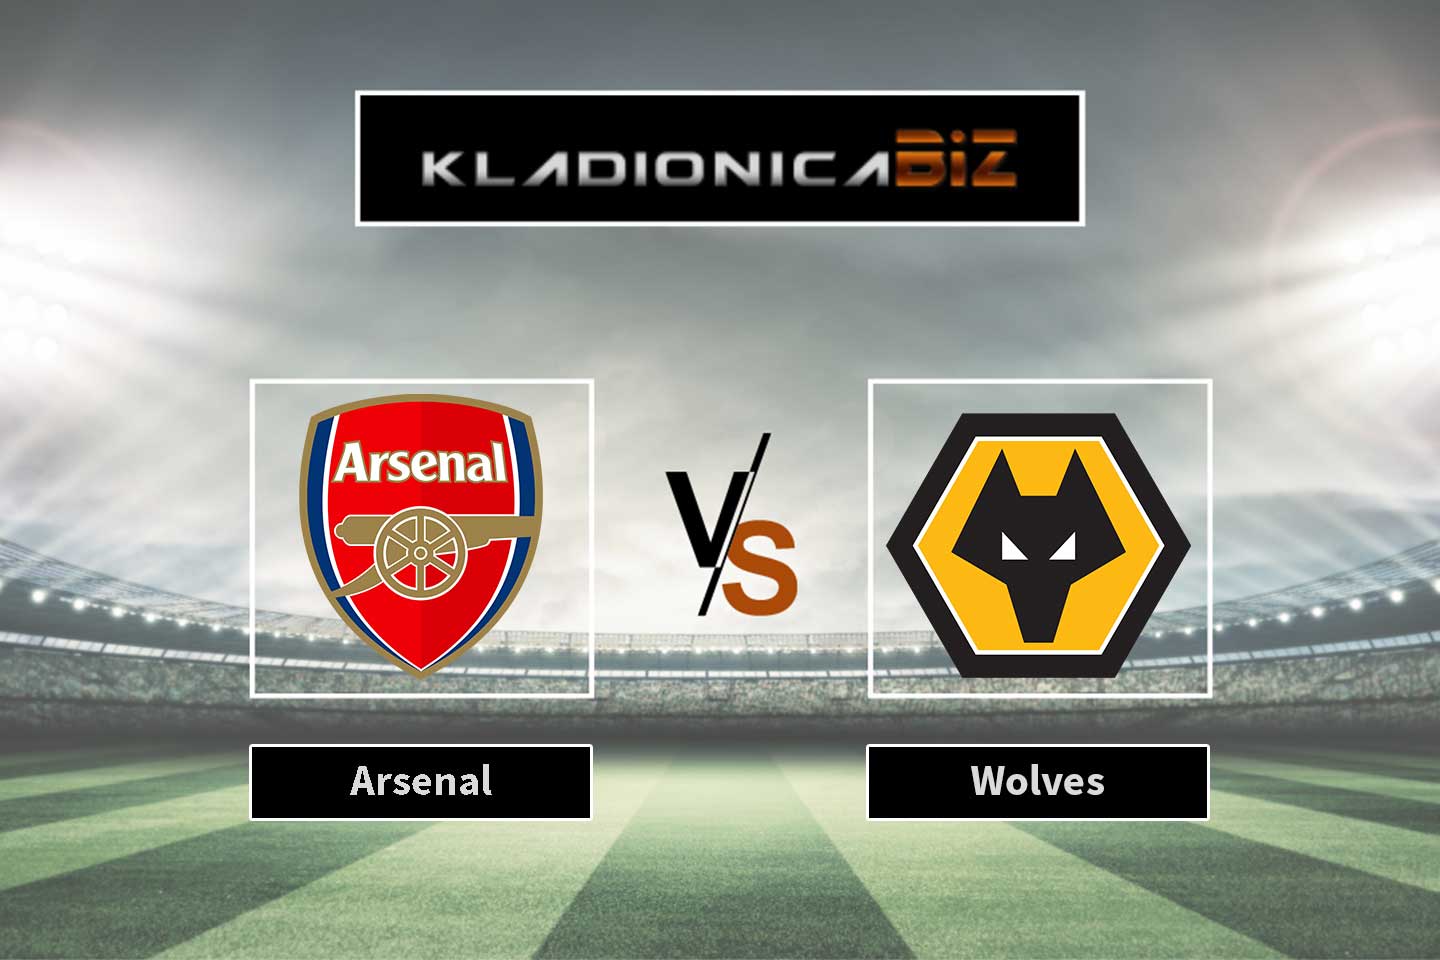 Arsenal vs Wolves